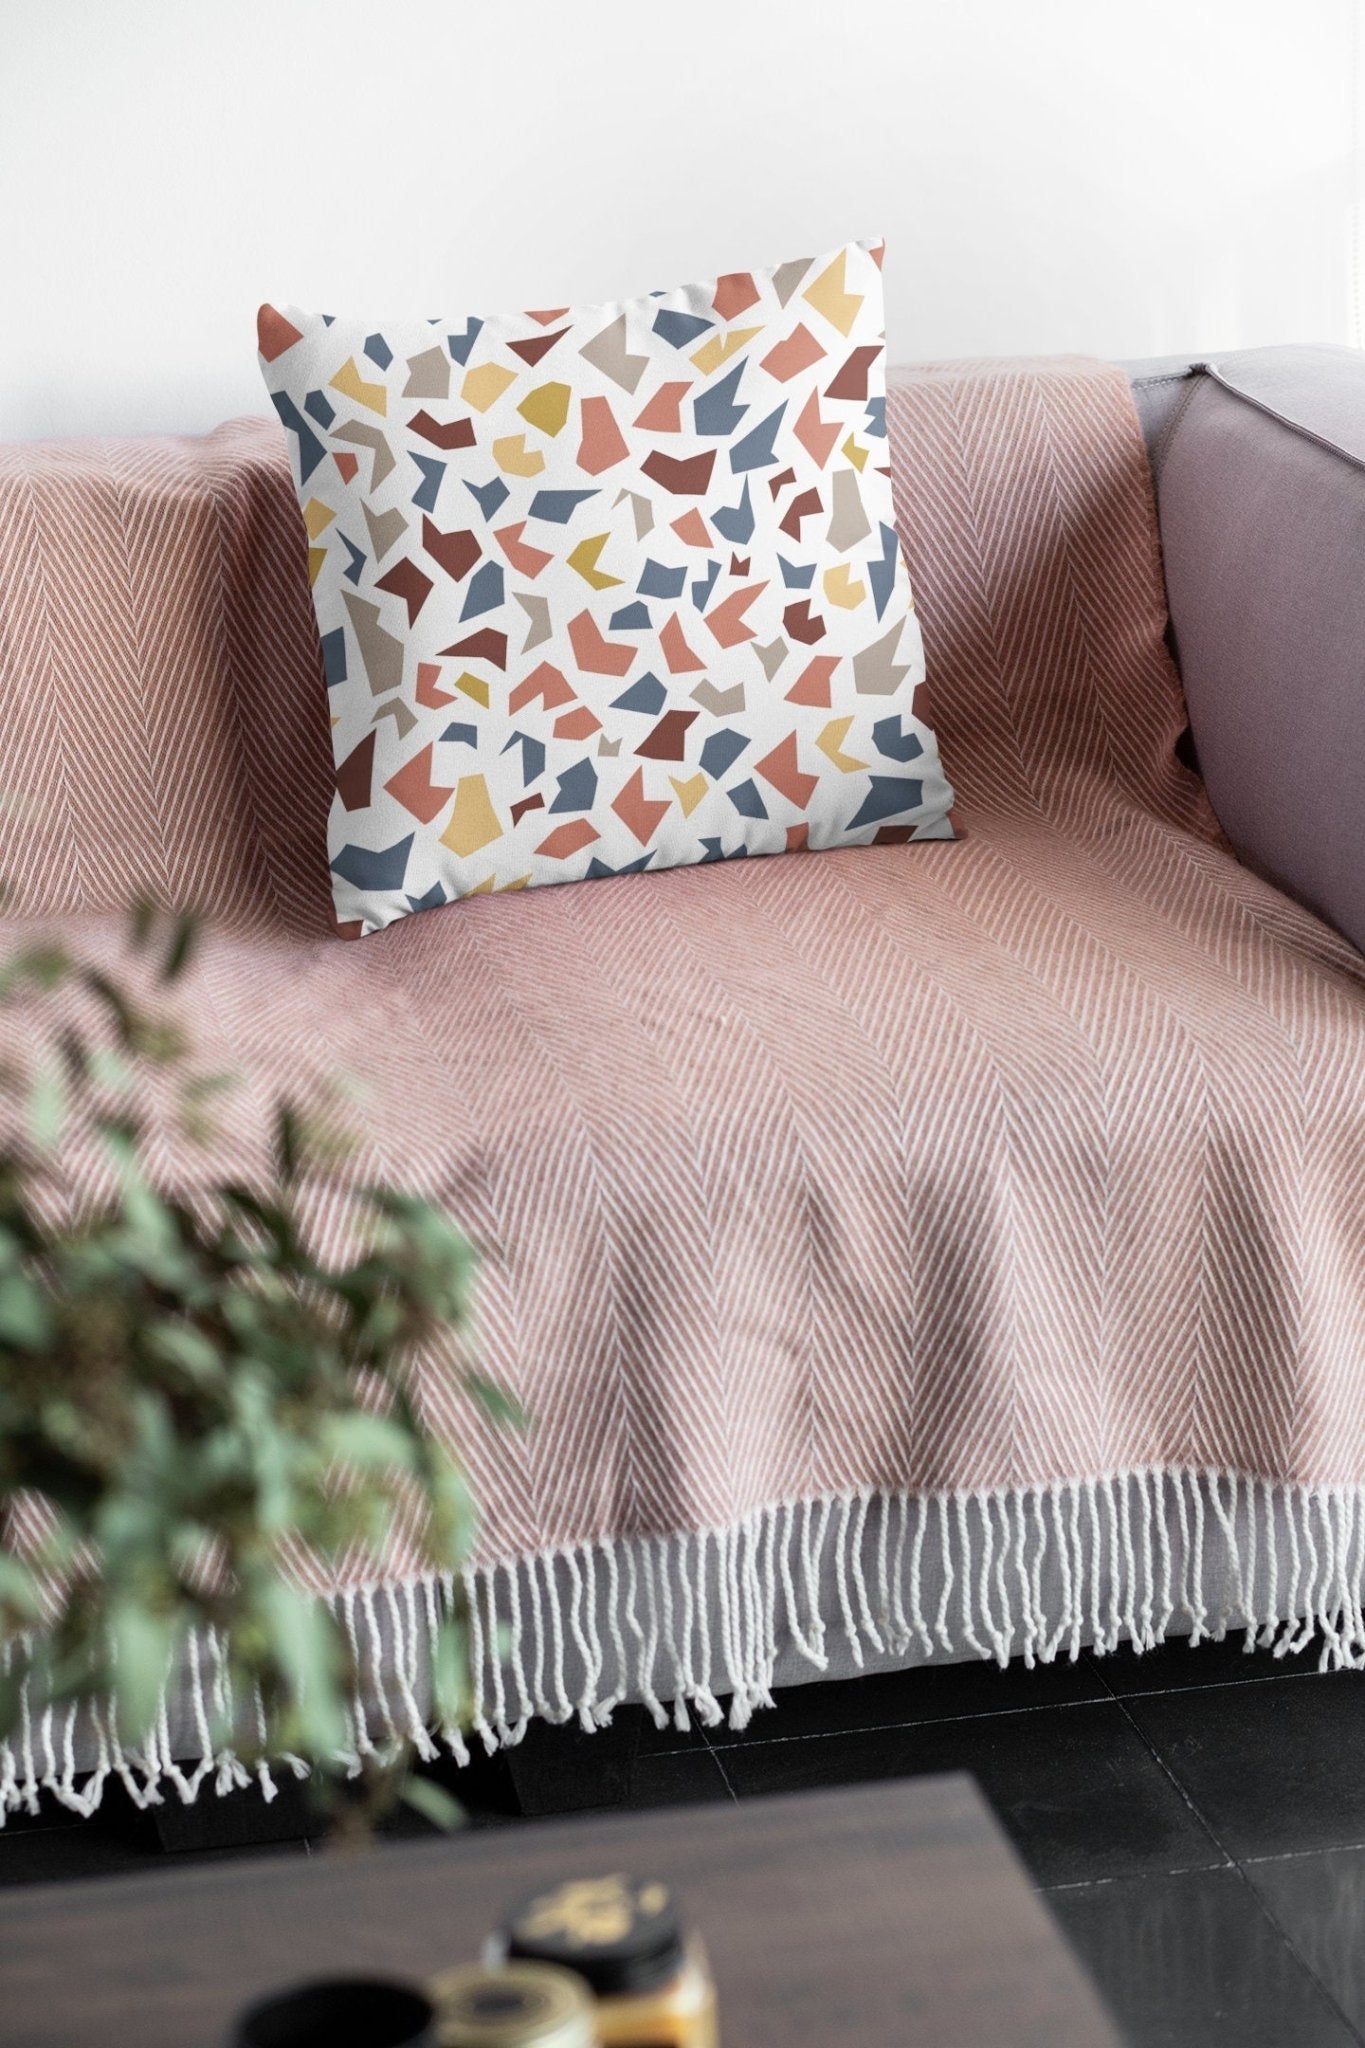 Terrazzo Pillow Cover - Multicolored Pattern